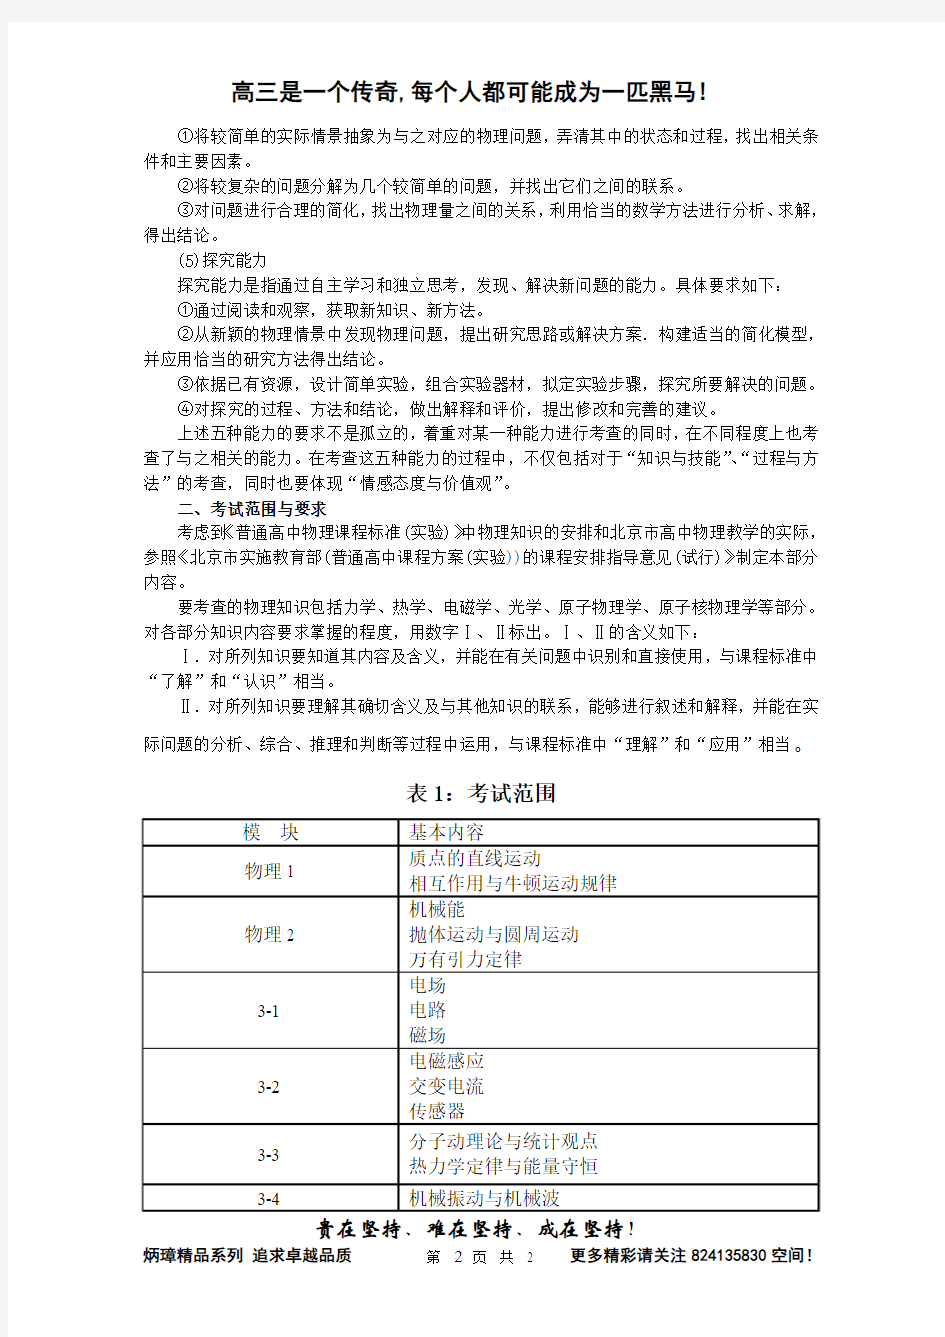 【恒心】2013年高考考试说明(北京卷)理科综合物理部分【仅供2014年高考考试说明未出前使用】